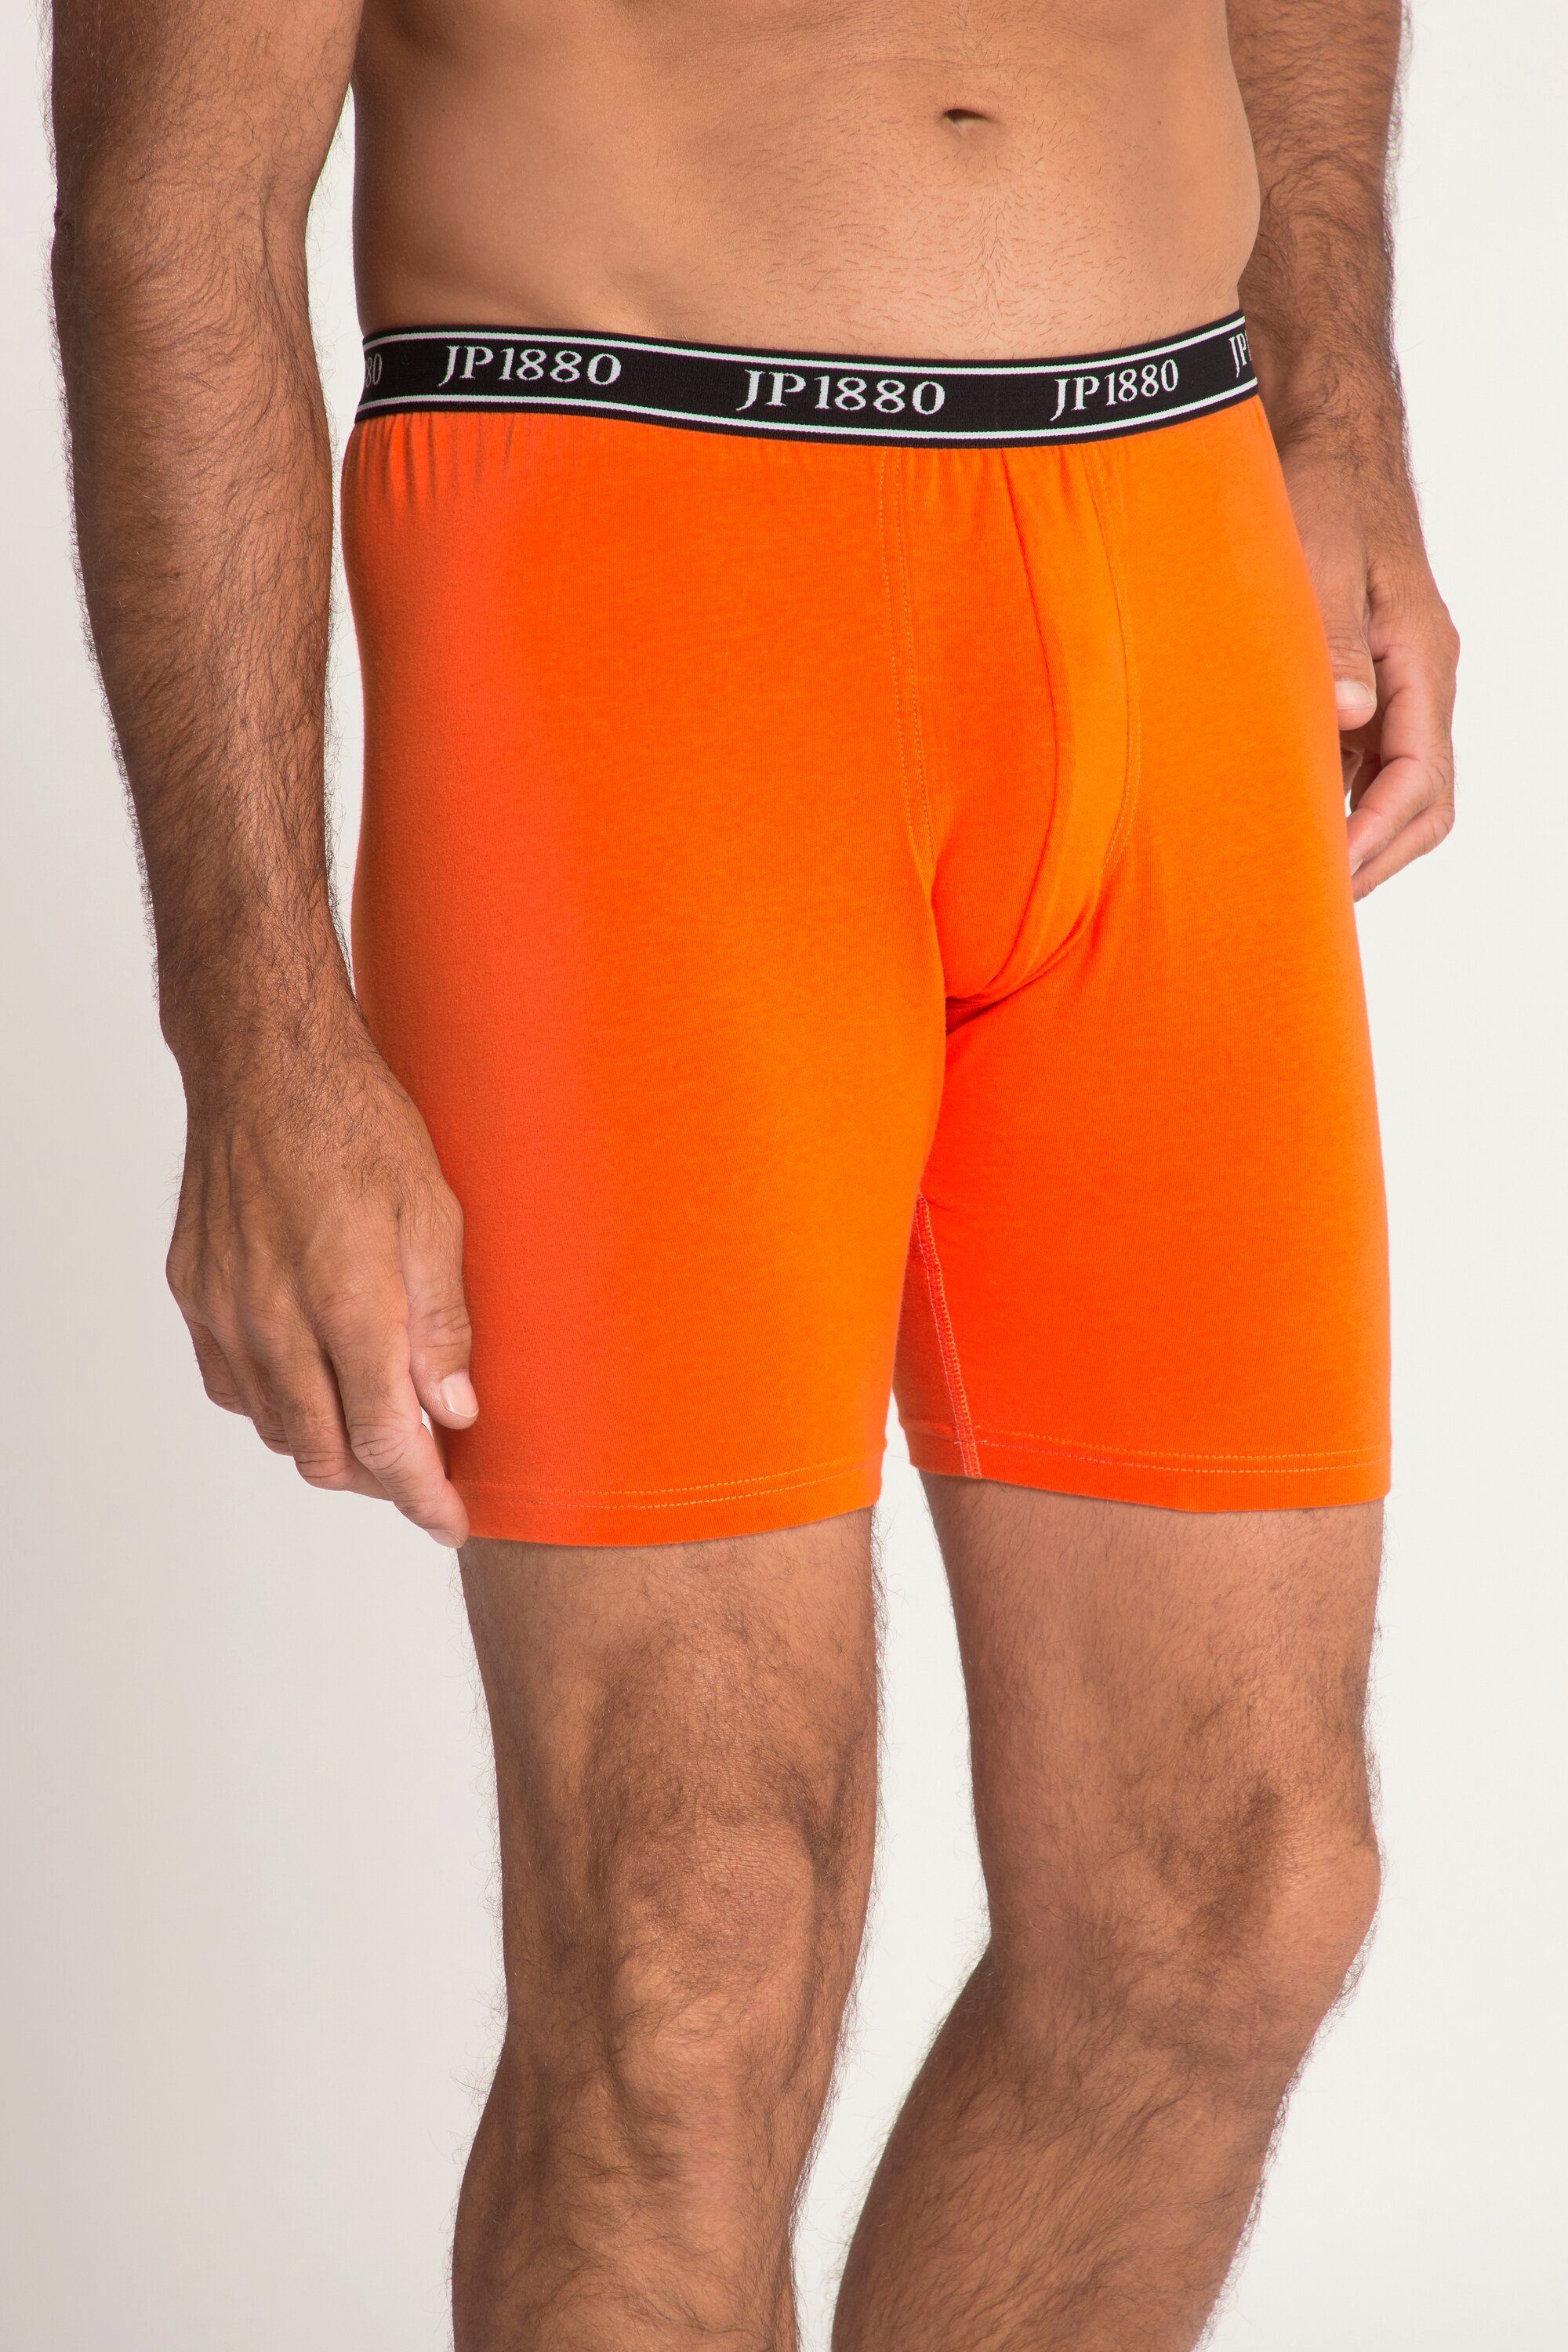 JP1880 Boxershorts JP1880 orange Komfortbund FLEXNAMIC® Longpants Unterhose